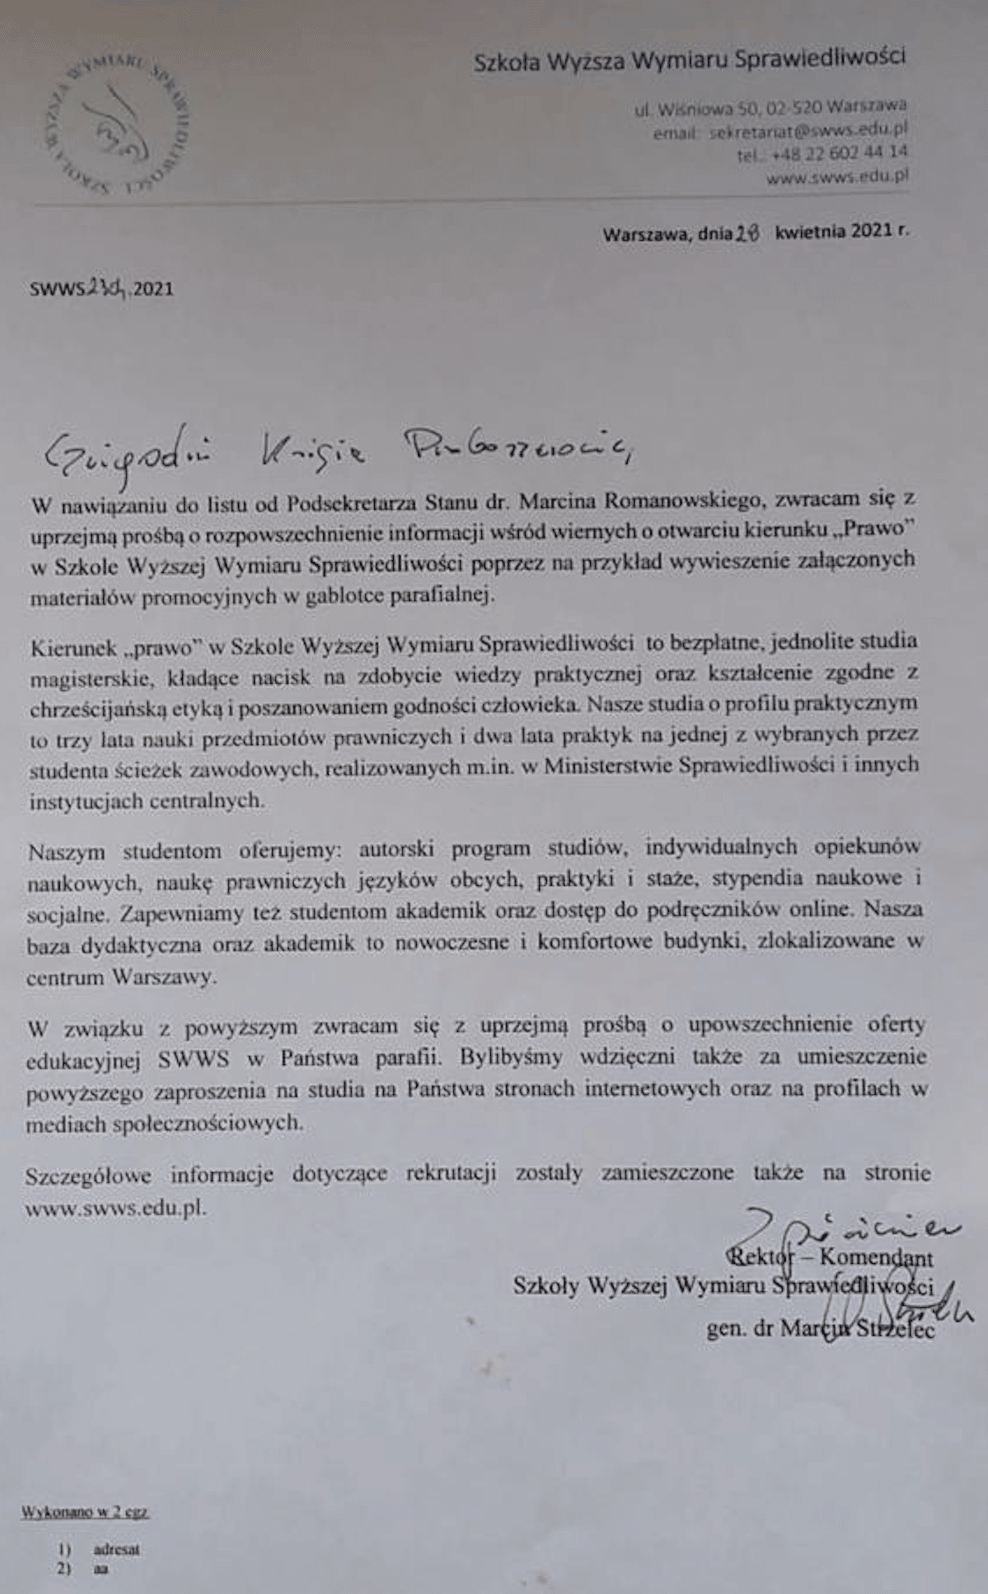 Gen. dr Marcin Strzelec, rektor Szkoły Wyższej Wymiaru Sprawiedliwości pisze do proboszczów z prośbą o pomoc w rekrutacji.